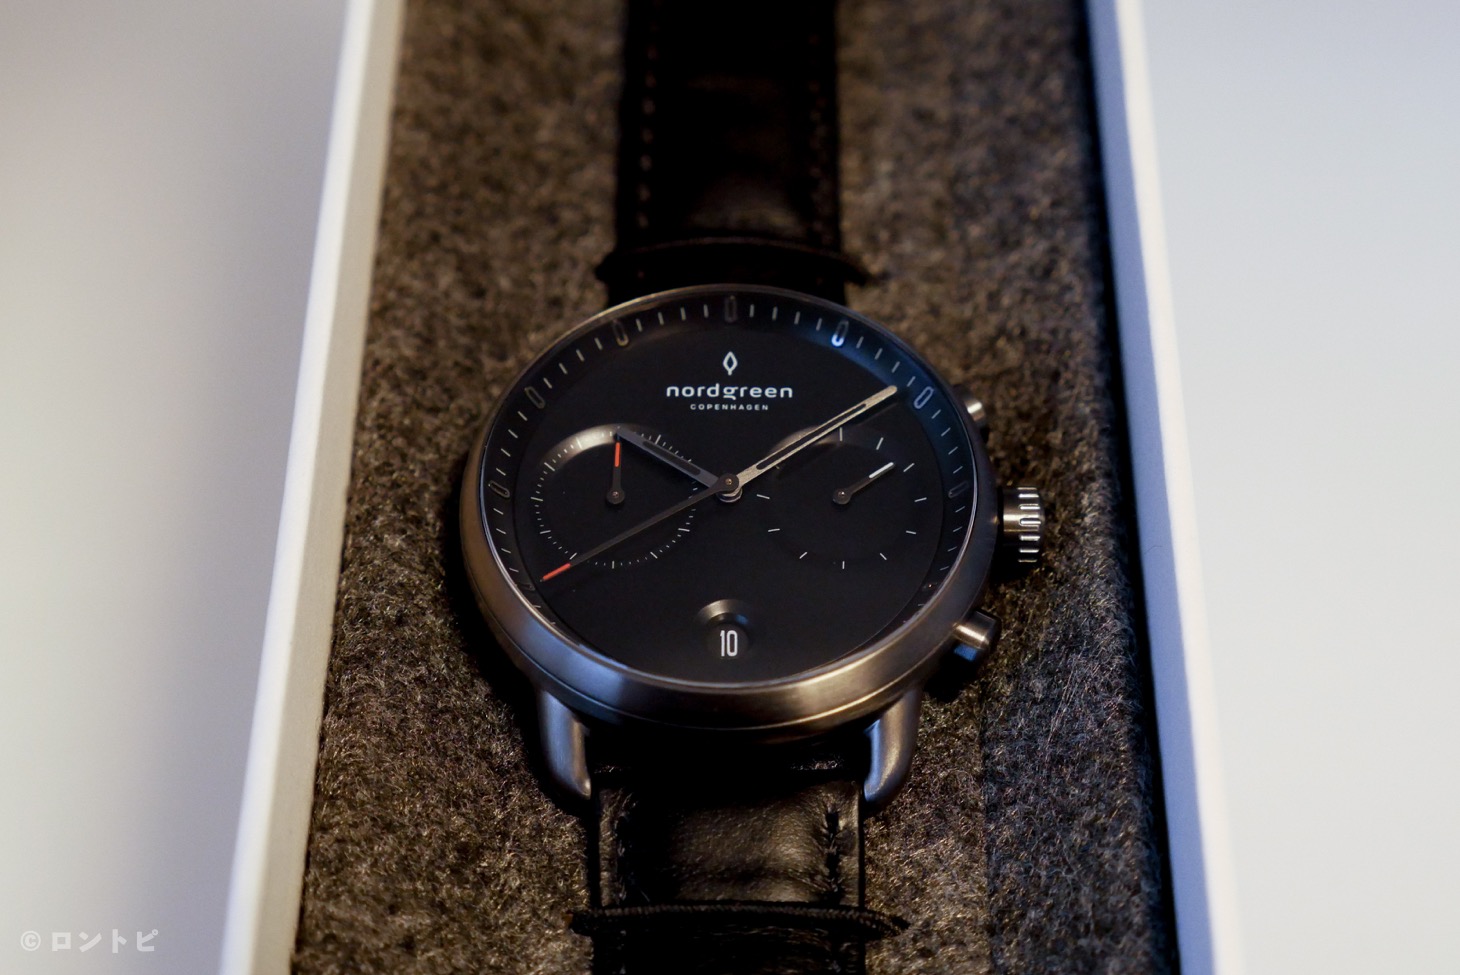 【Nordgreen】北欧デザインのメンズ腕時計「Pioneer（クロノグラフ）」がシンプルでクール！ミニマムなデザインが物欲を刺激する